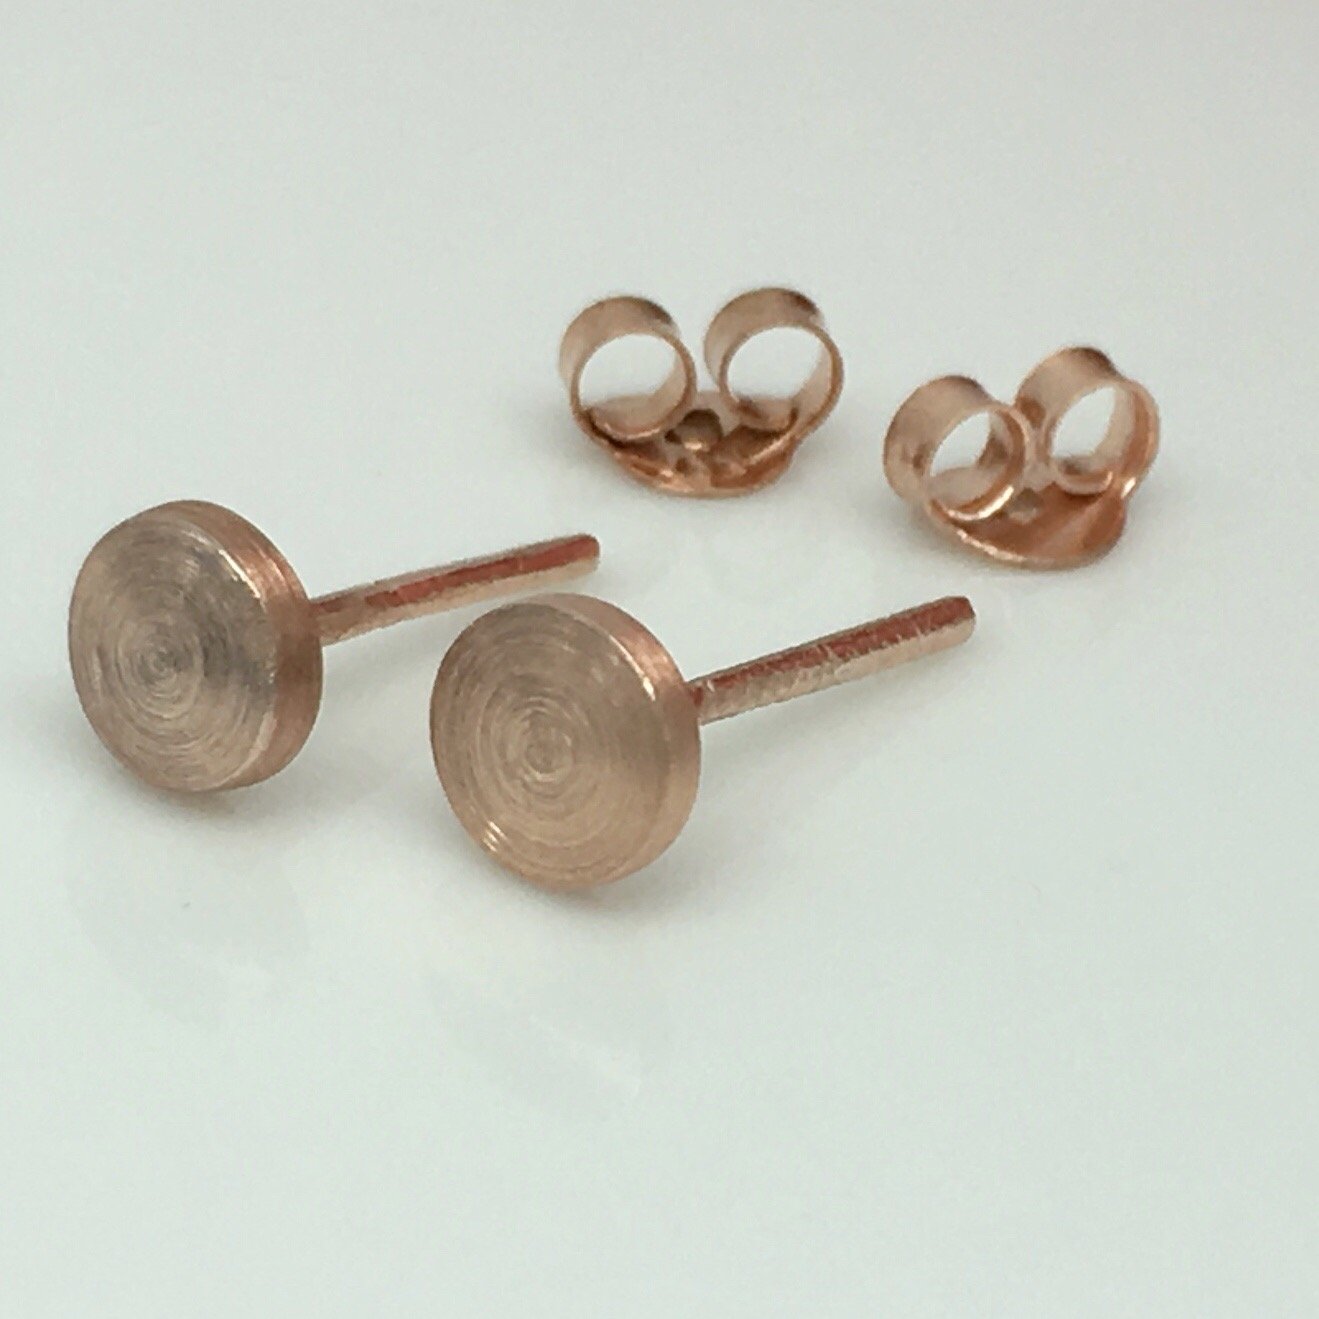 Men's stud earrings in rose gold plating, rustic nail 5mm disc stud earrings, EC4205MR